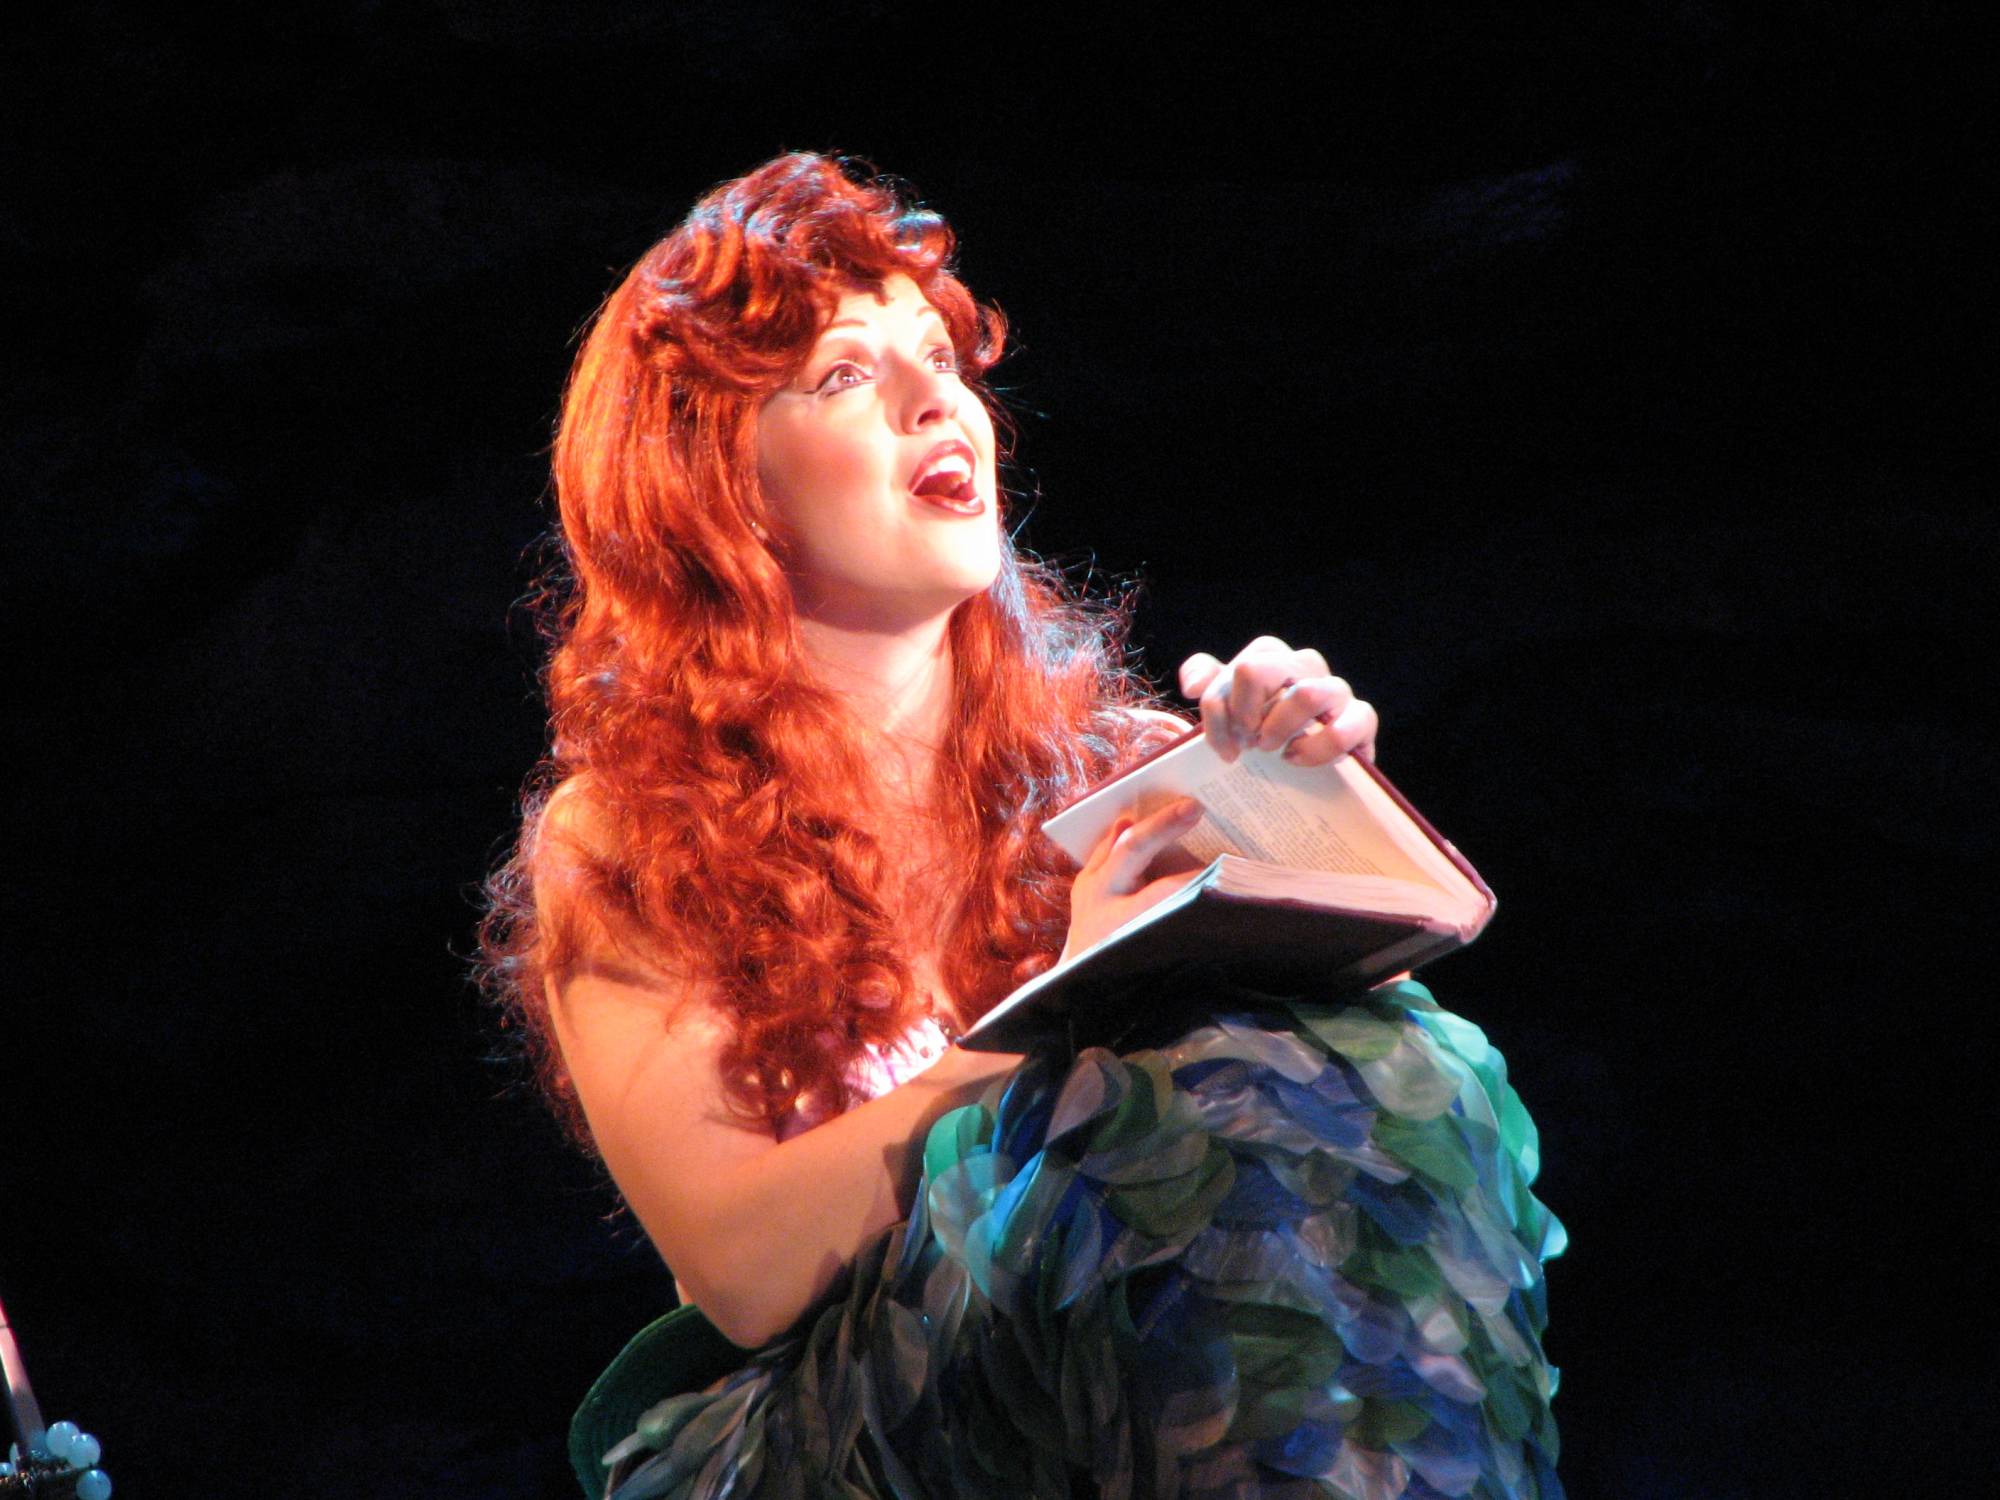 Disneys Hollywood Studios - Ariel in Voyage of the Little Mermaid